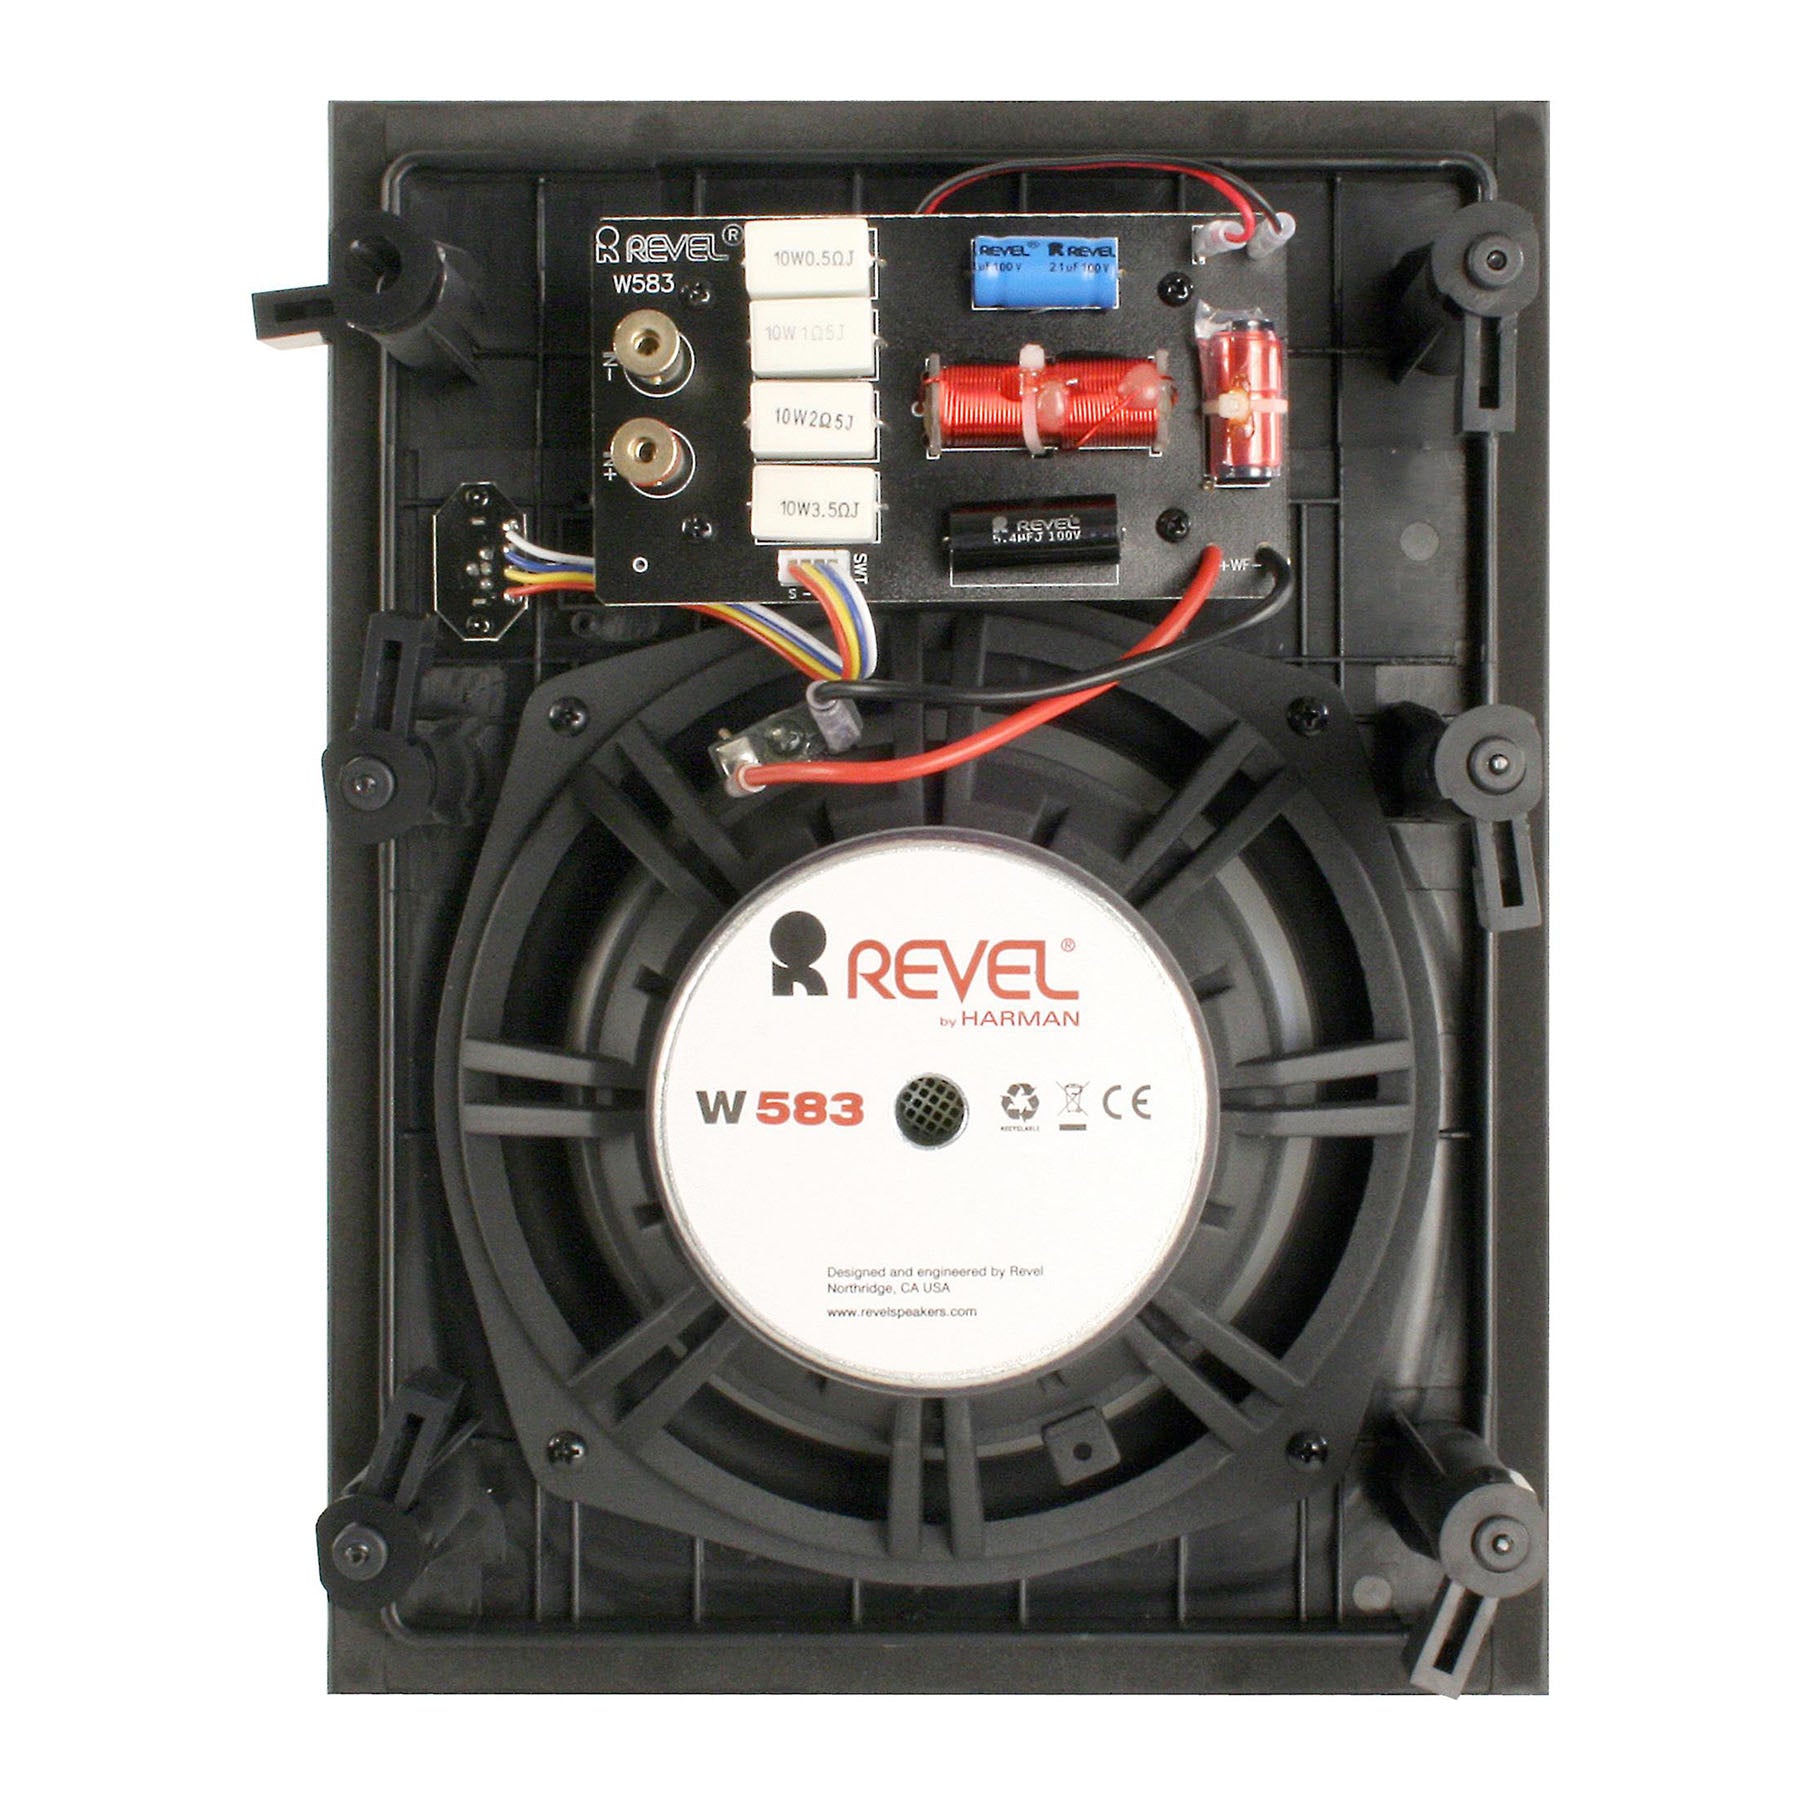 Revel W583 8" In-Wall Loudspeaker